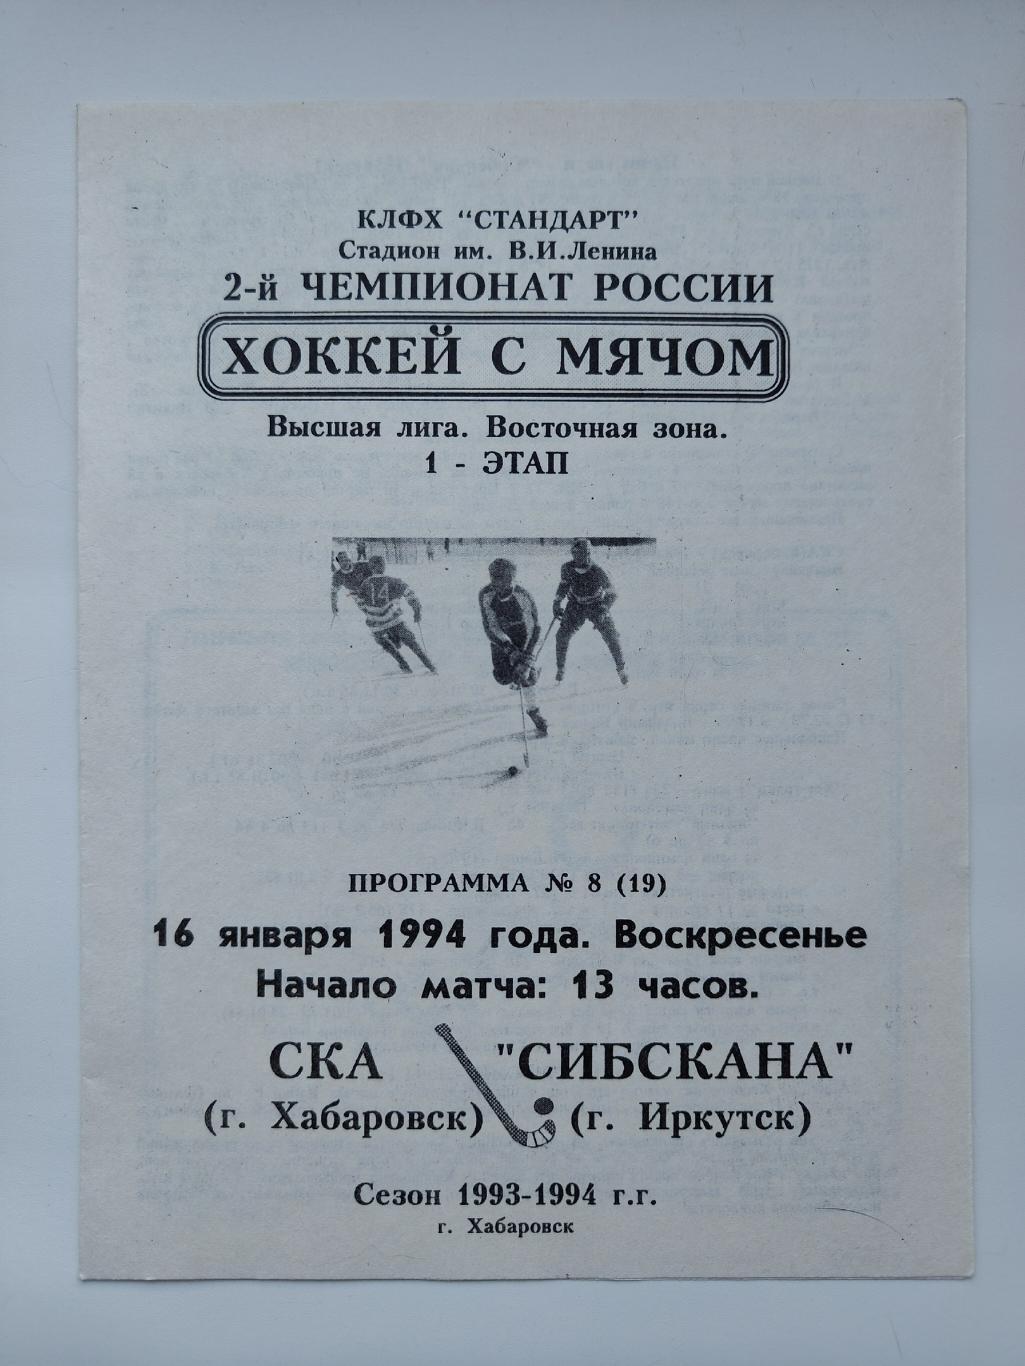 Хоккей с мячом. СКА Хабаровск - Сибскана Иркутск 16 января 1994